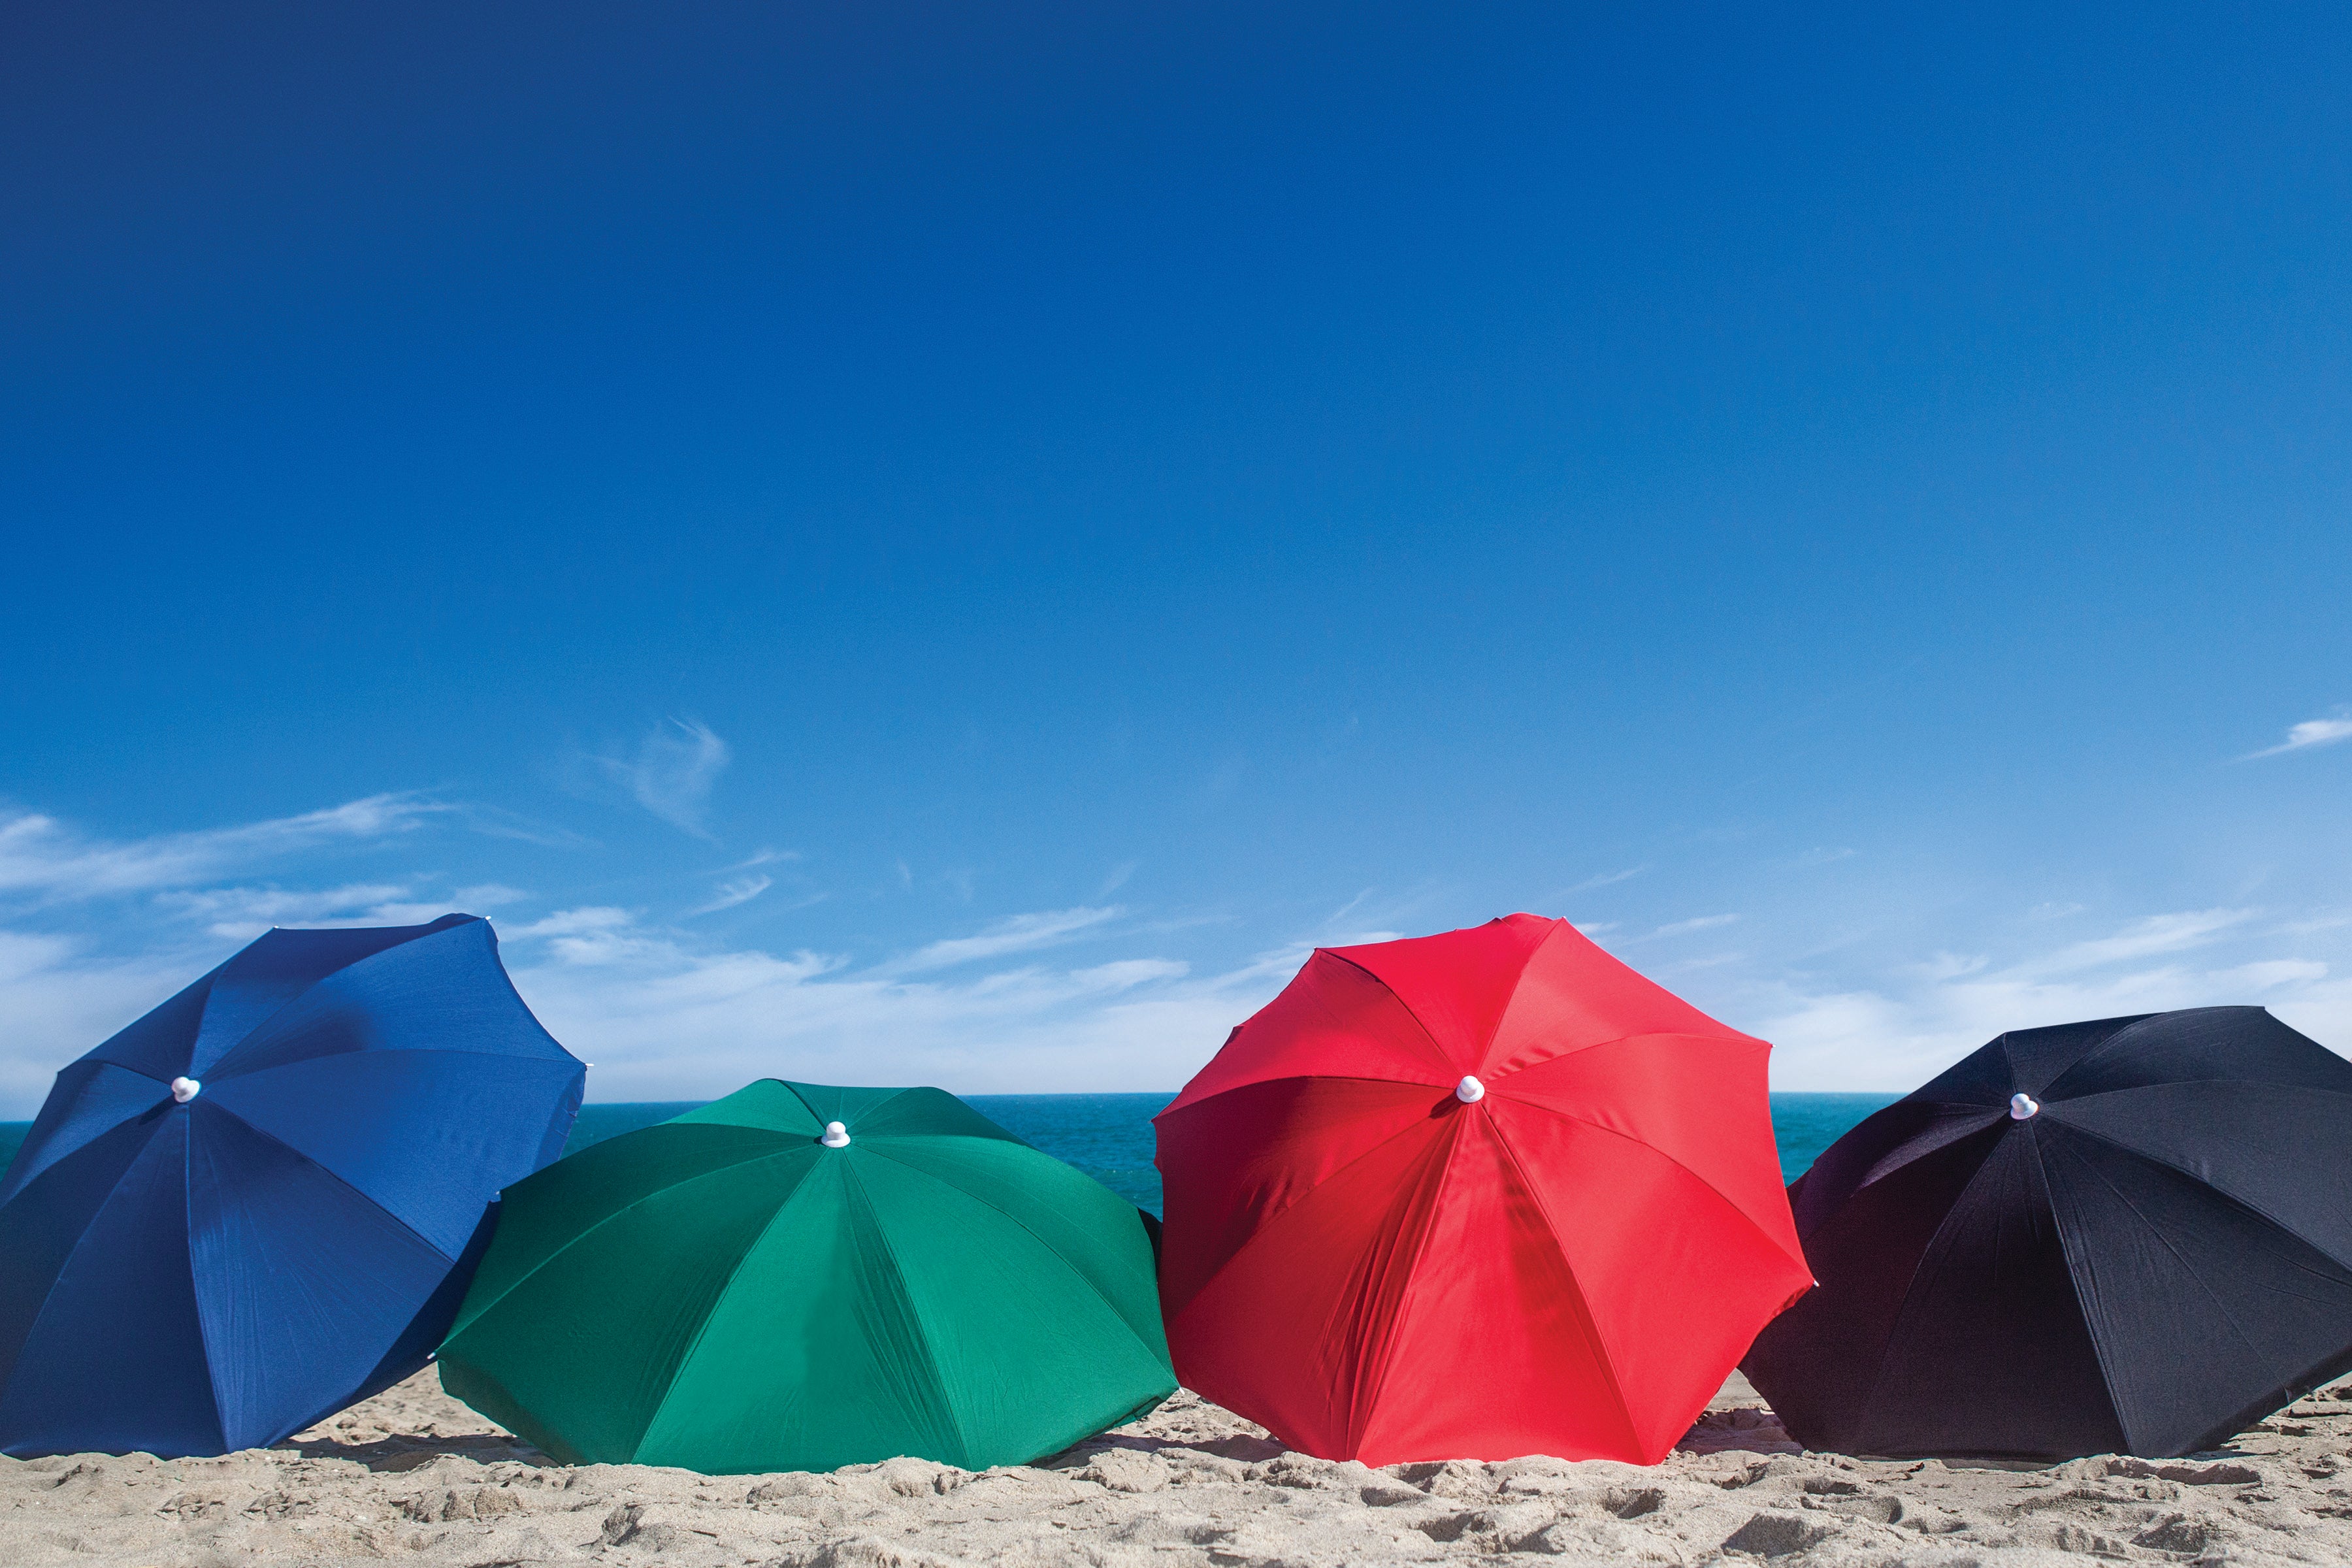 Florida State Seminoles - 5.5 Ft. Portable Beach Umbrella